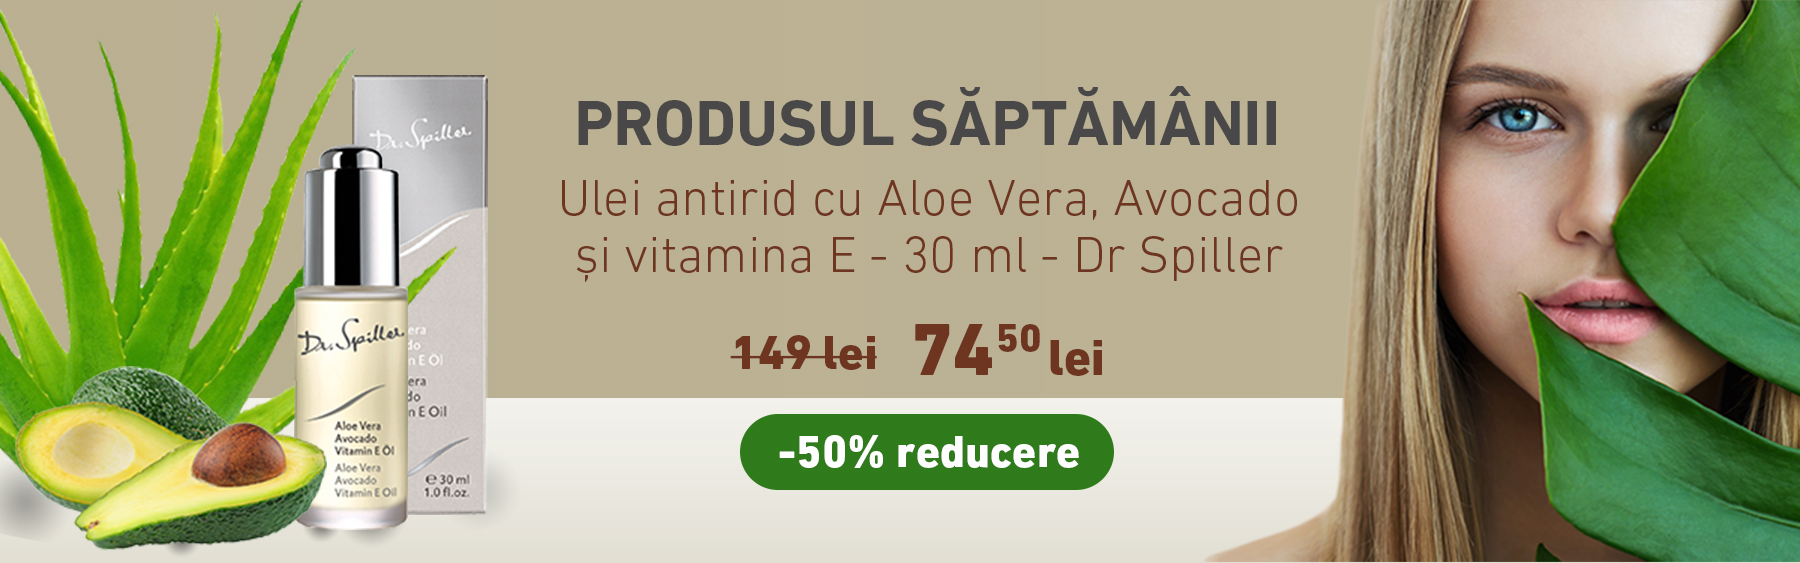 Ulei antirid cu Aloe Vera, Avocado si vitamina E - 30 ml - Dr Spiller cu -50% reducere